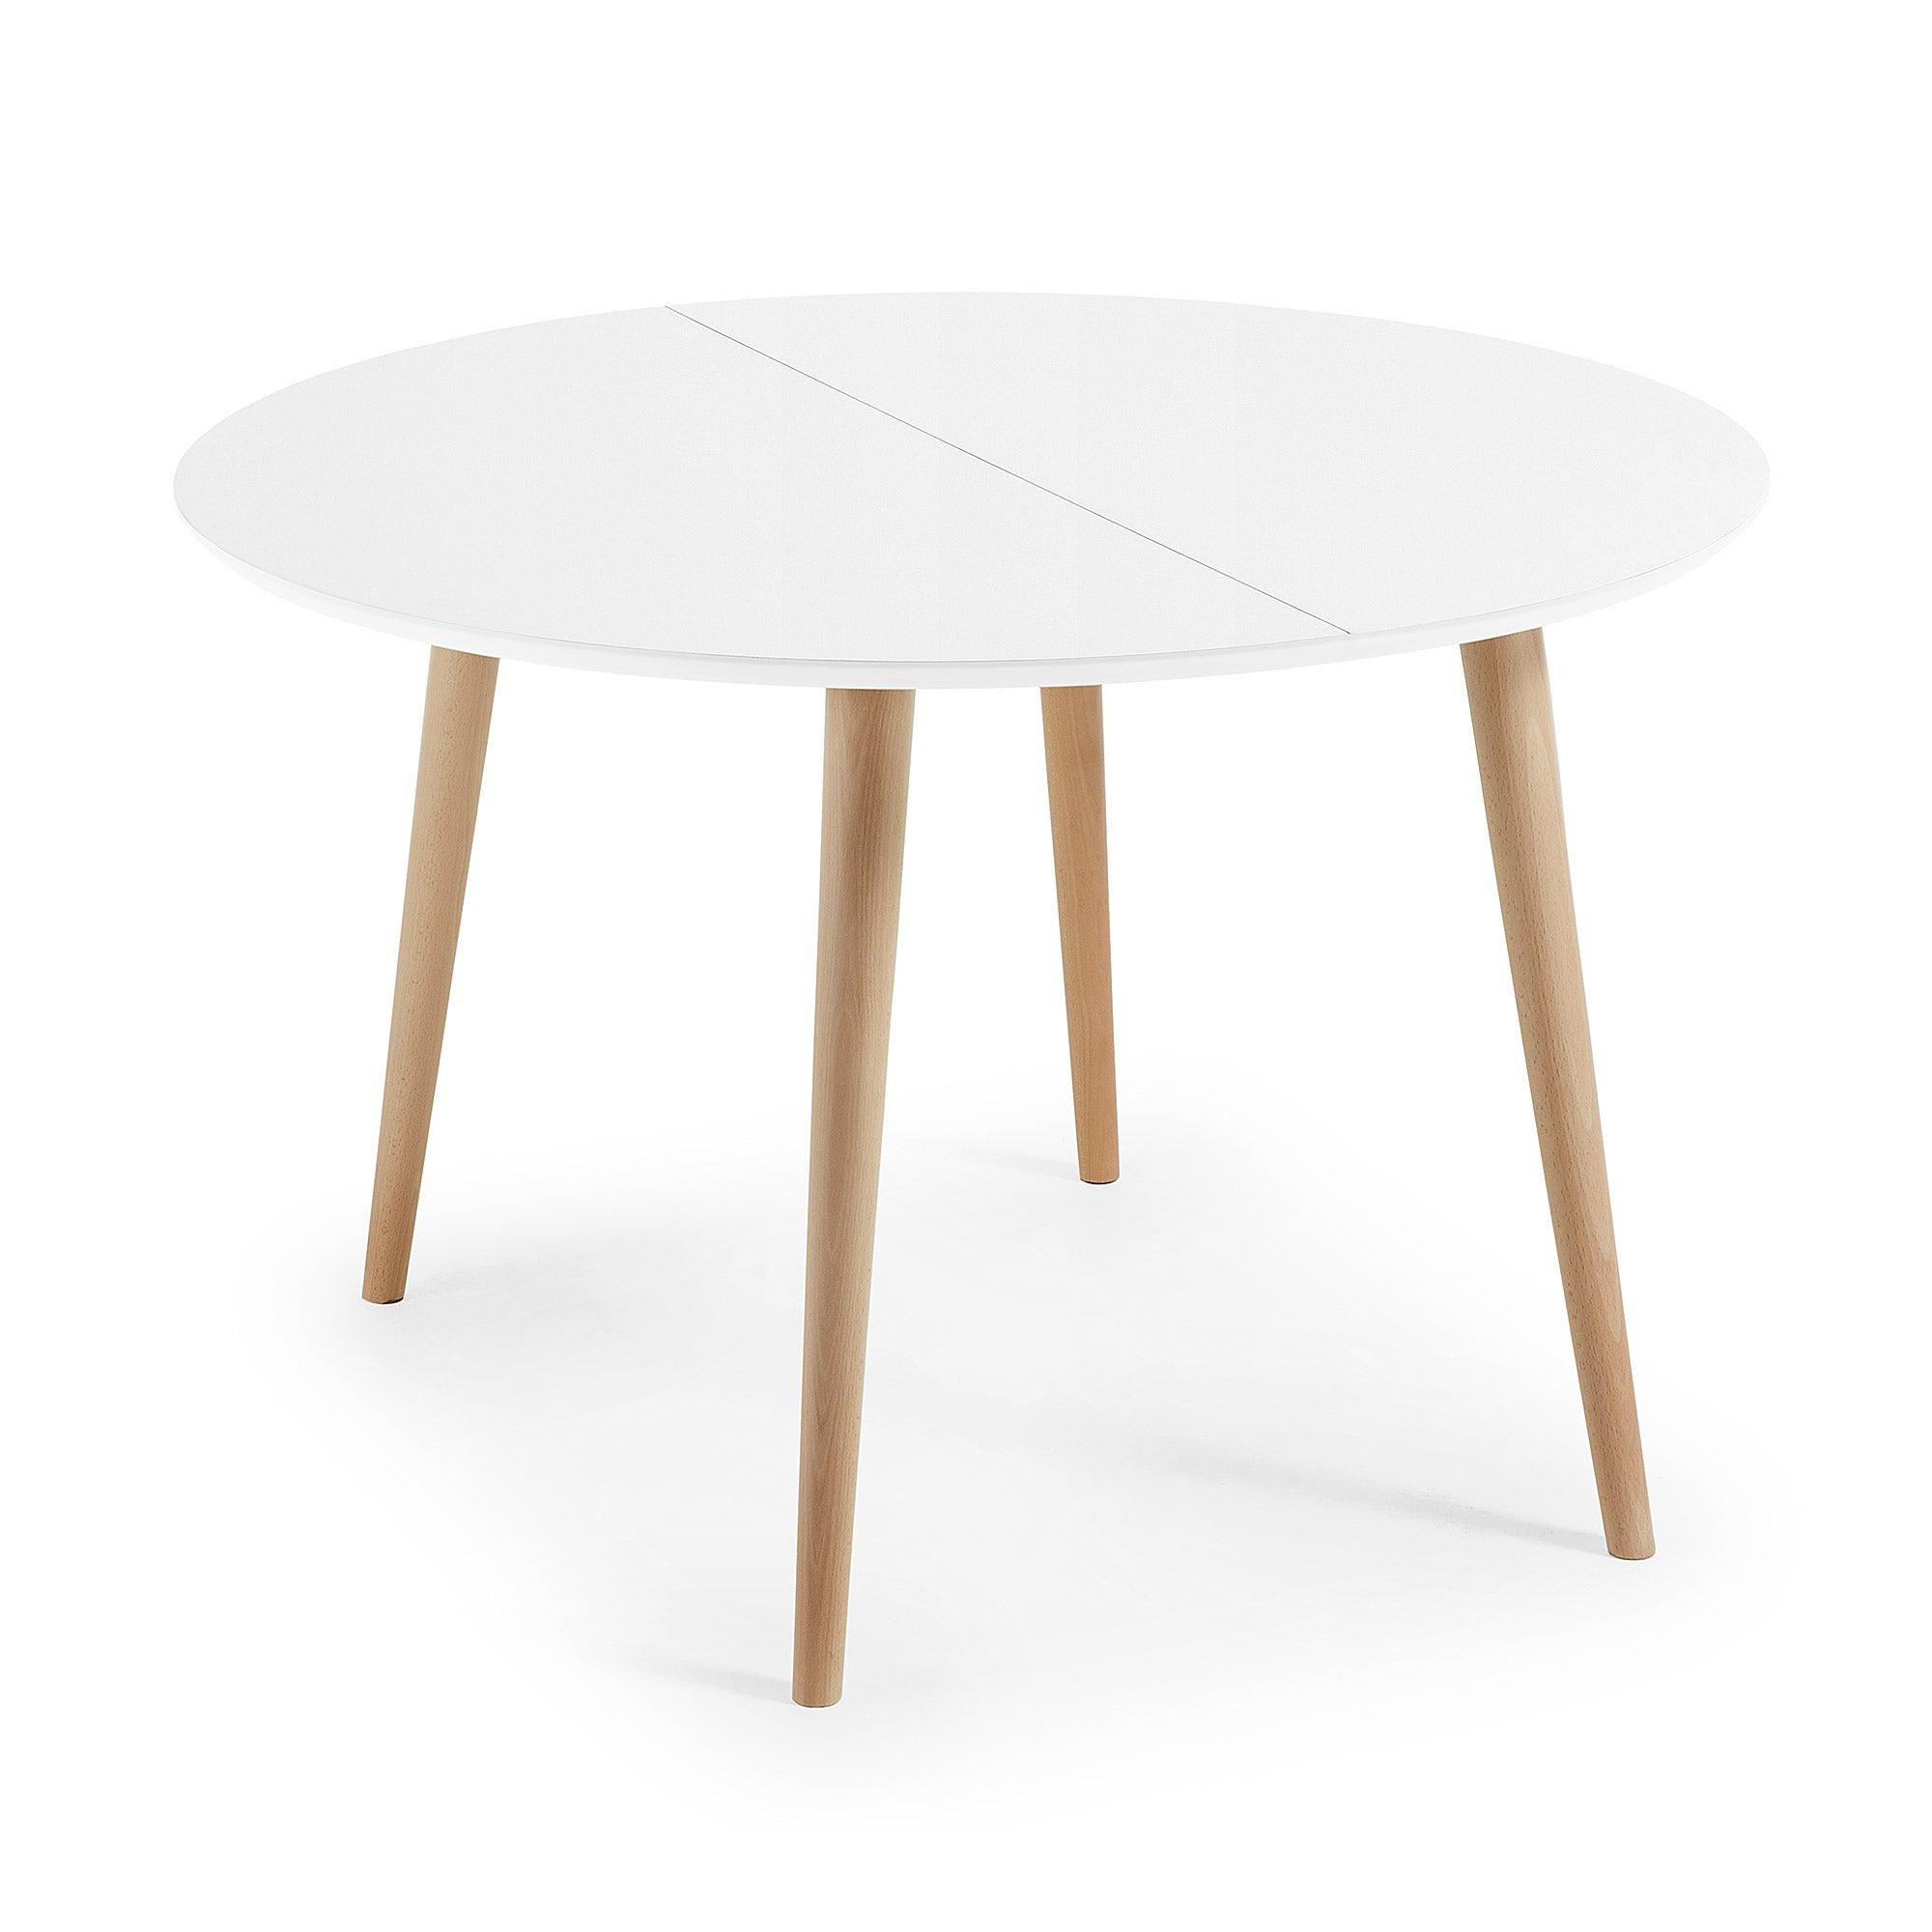 Stół rozkładany OQUI biały La Forma 120 x 120 - 200 cm   Eye on Design